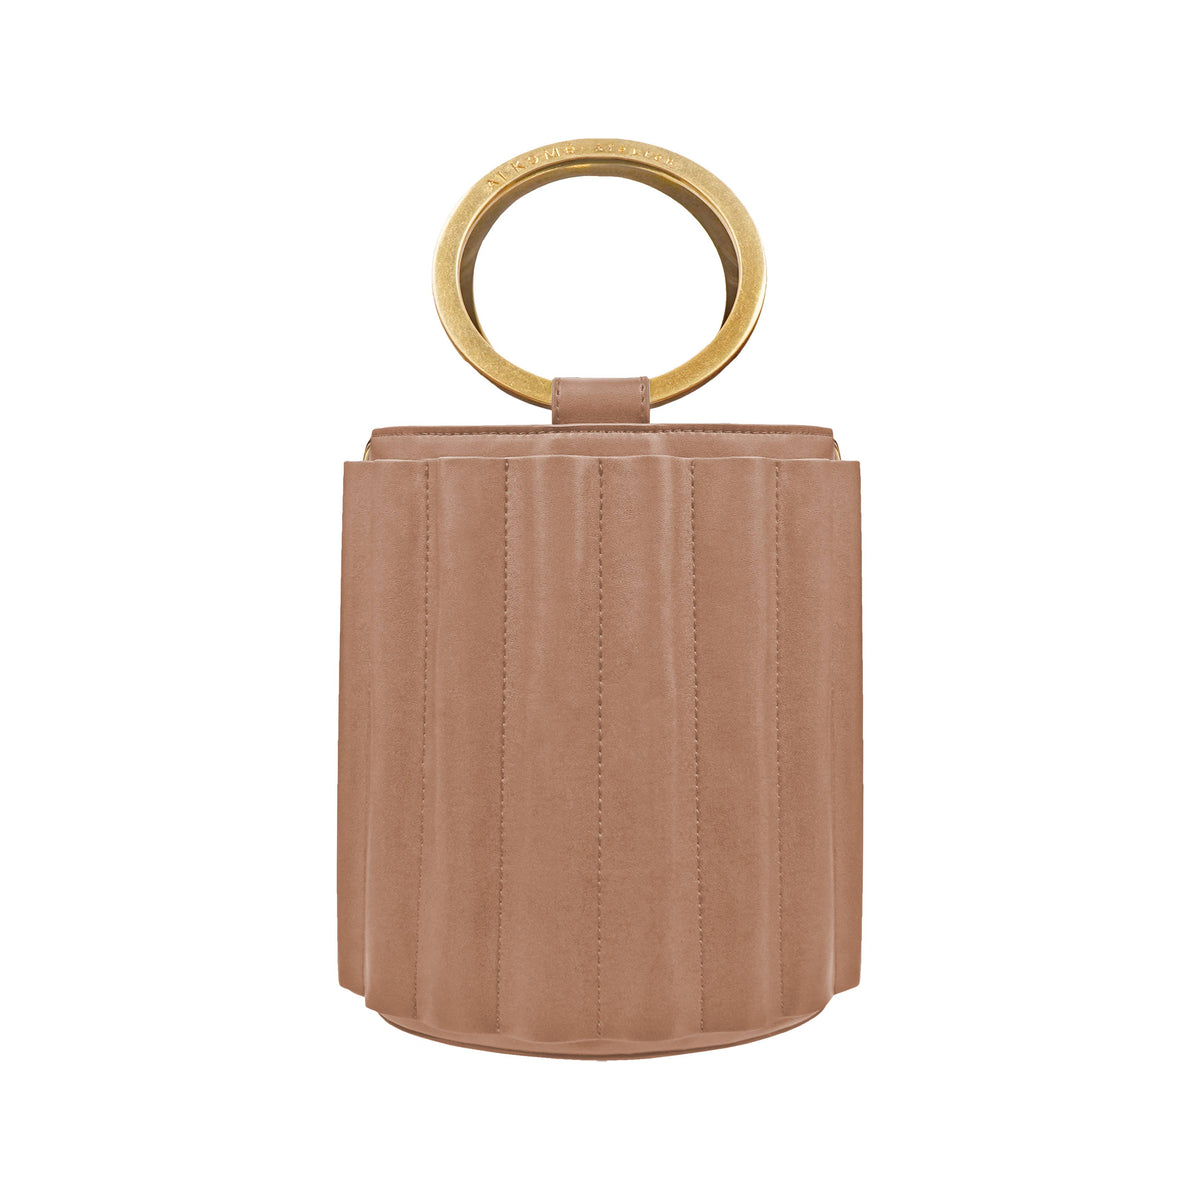 Water Metal Handle Bucket Bag - Nude - Tiff'sLux Re